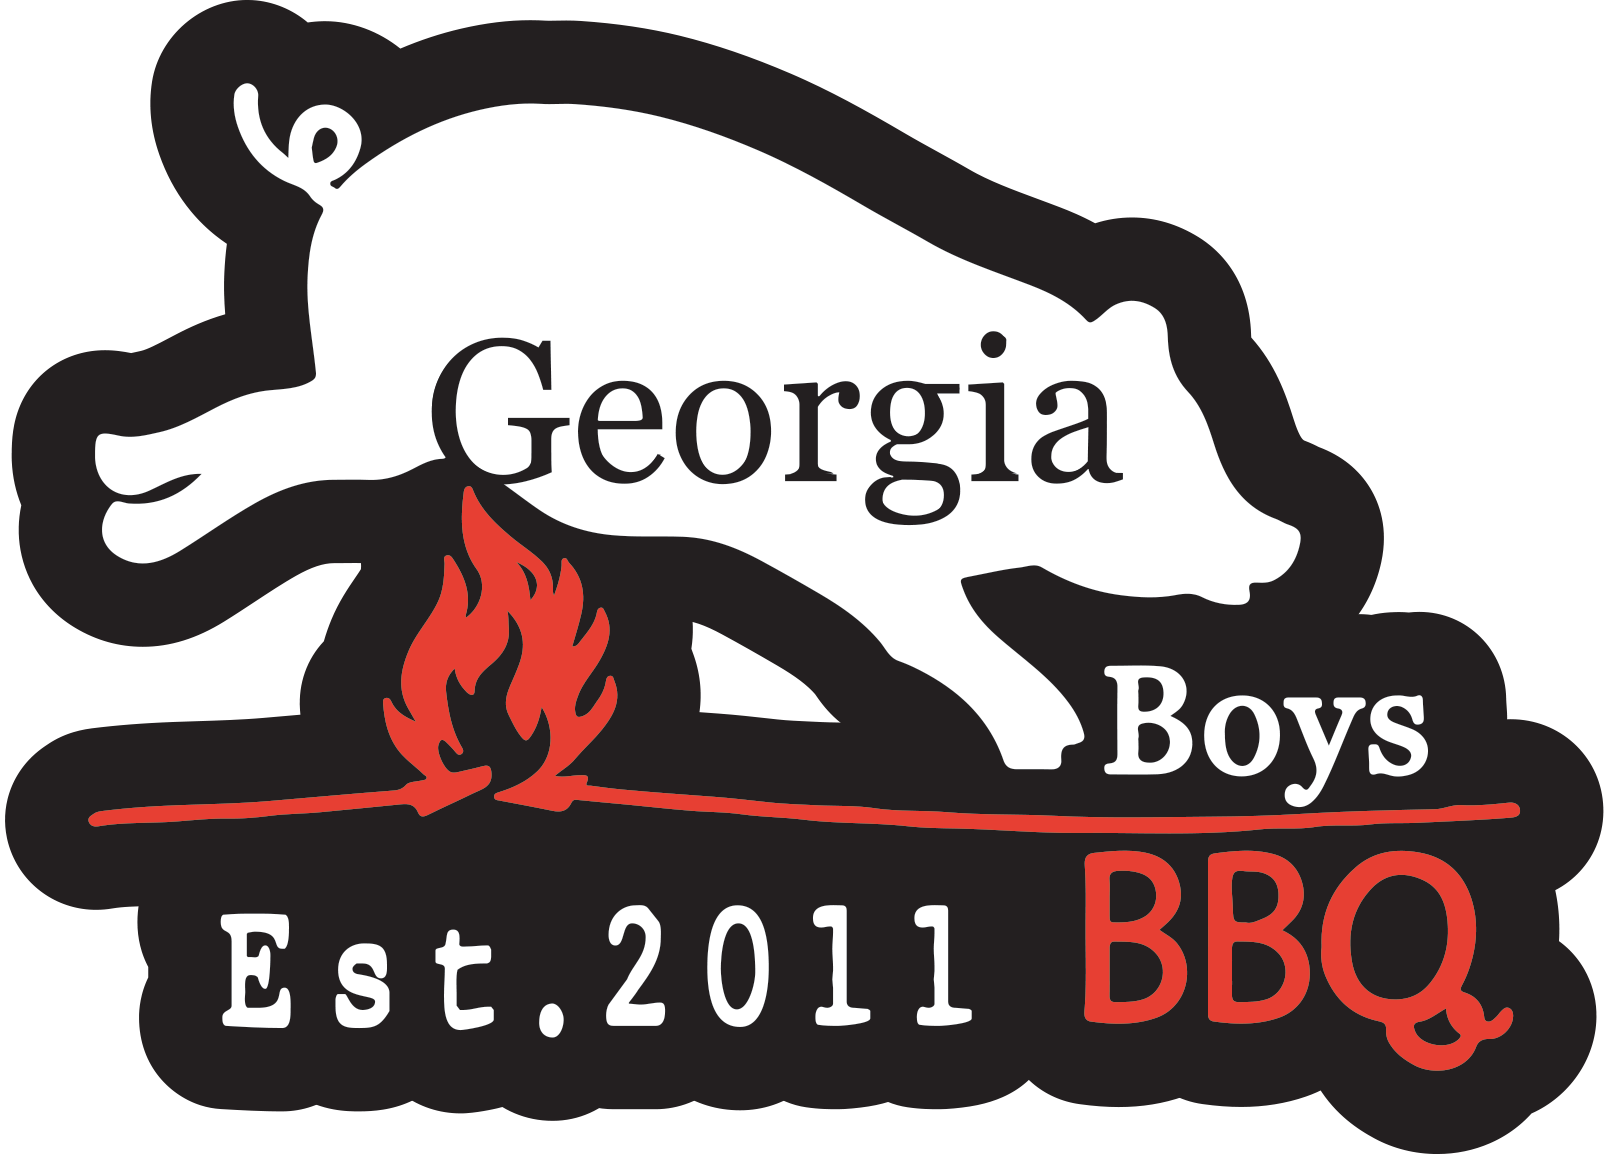 Georgia Boys BBQ Home